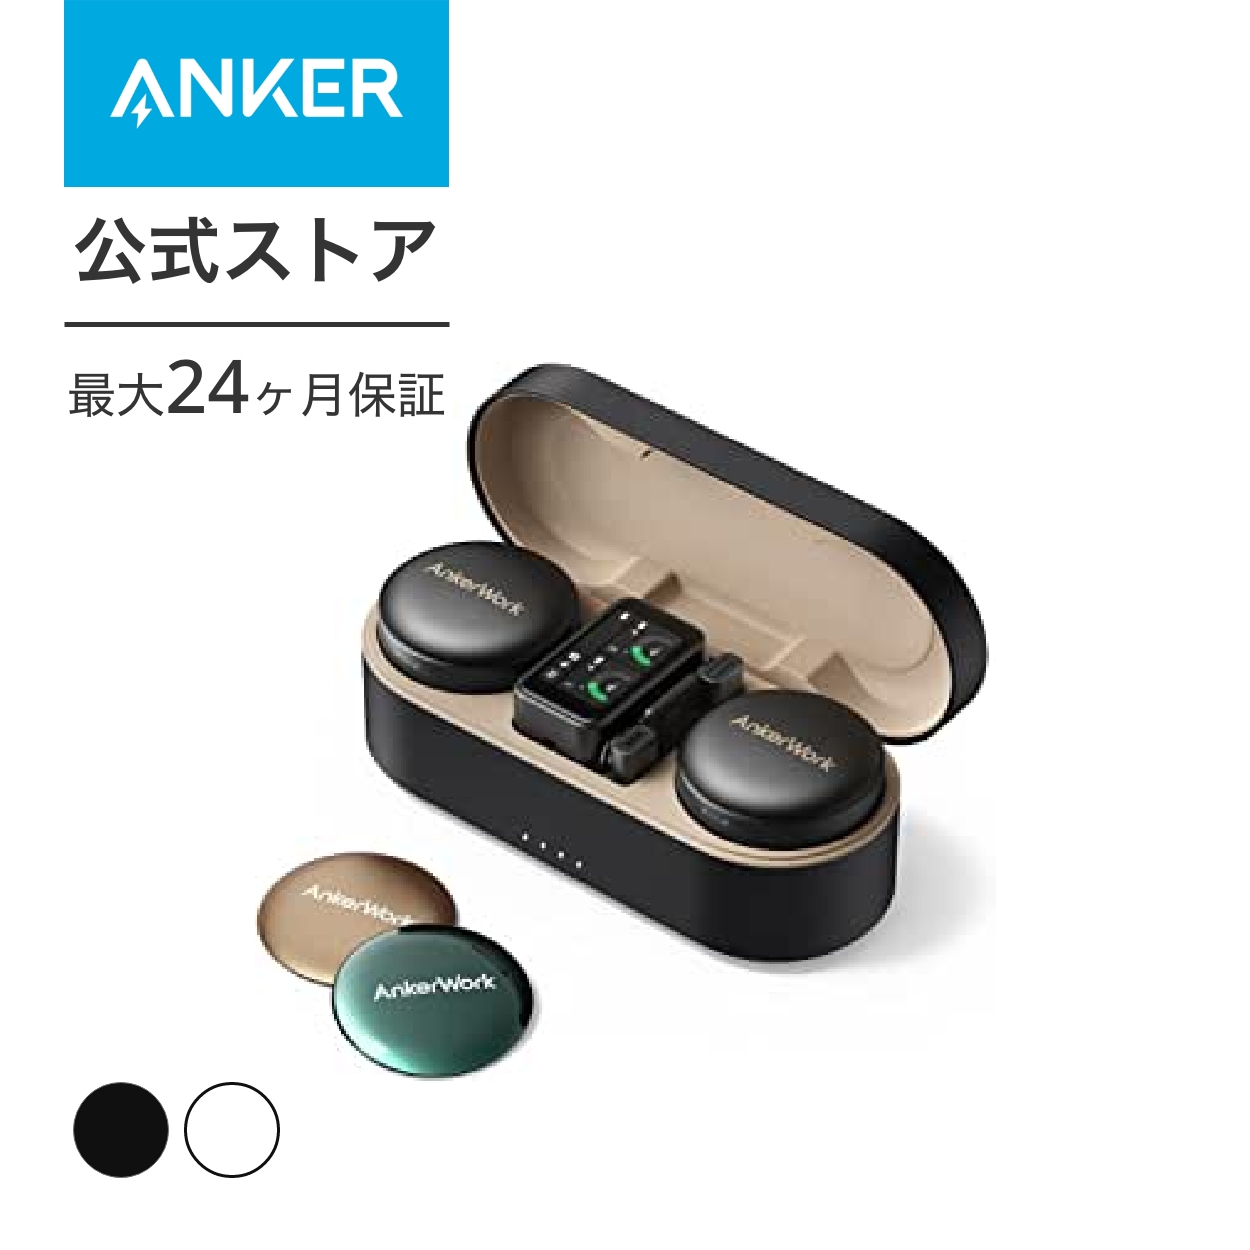 AnkerWork M650 Wireless Microphone ワイヤレスマイク ピンマイクiPhone、カメラ、PC、タブレット対応 ライブストリーム